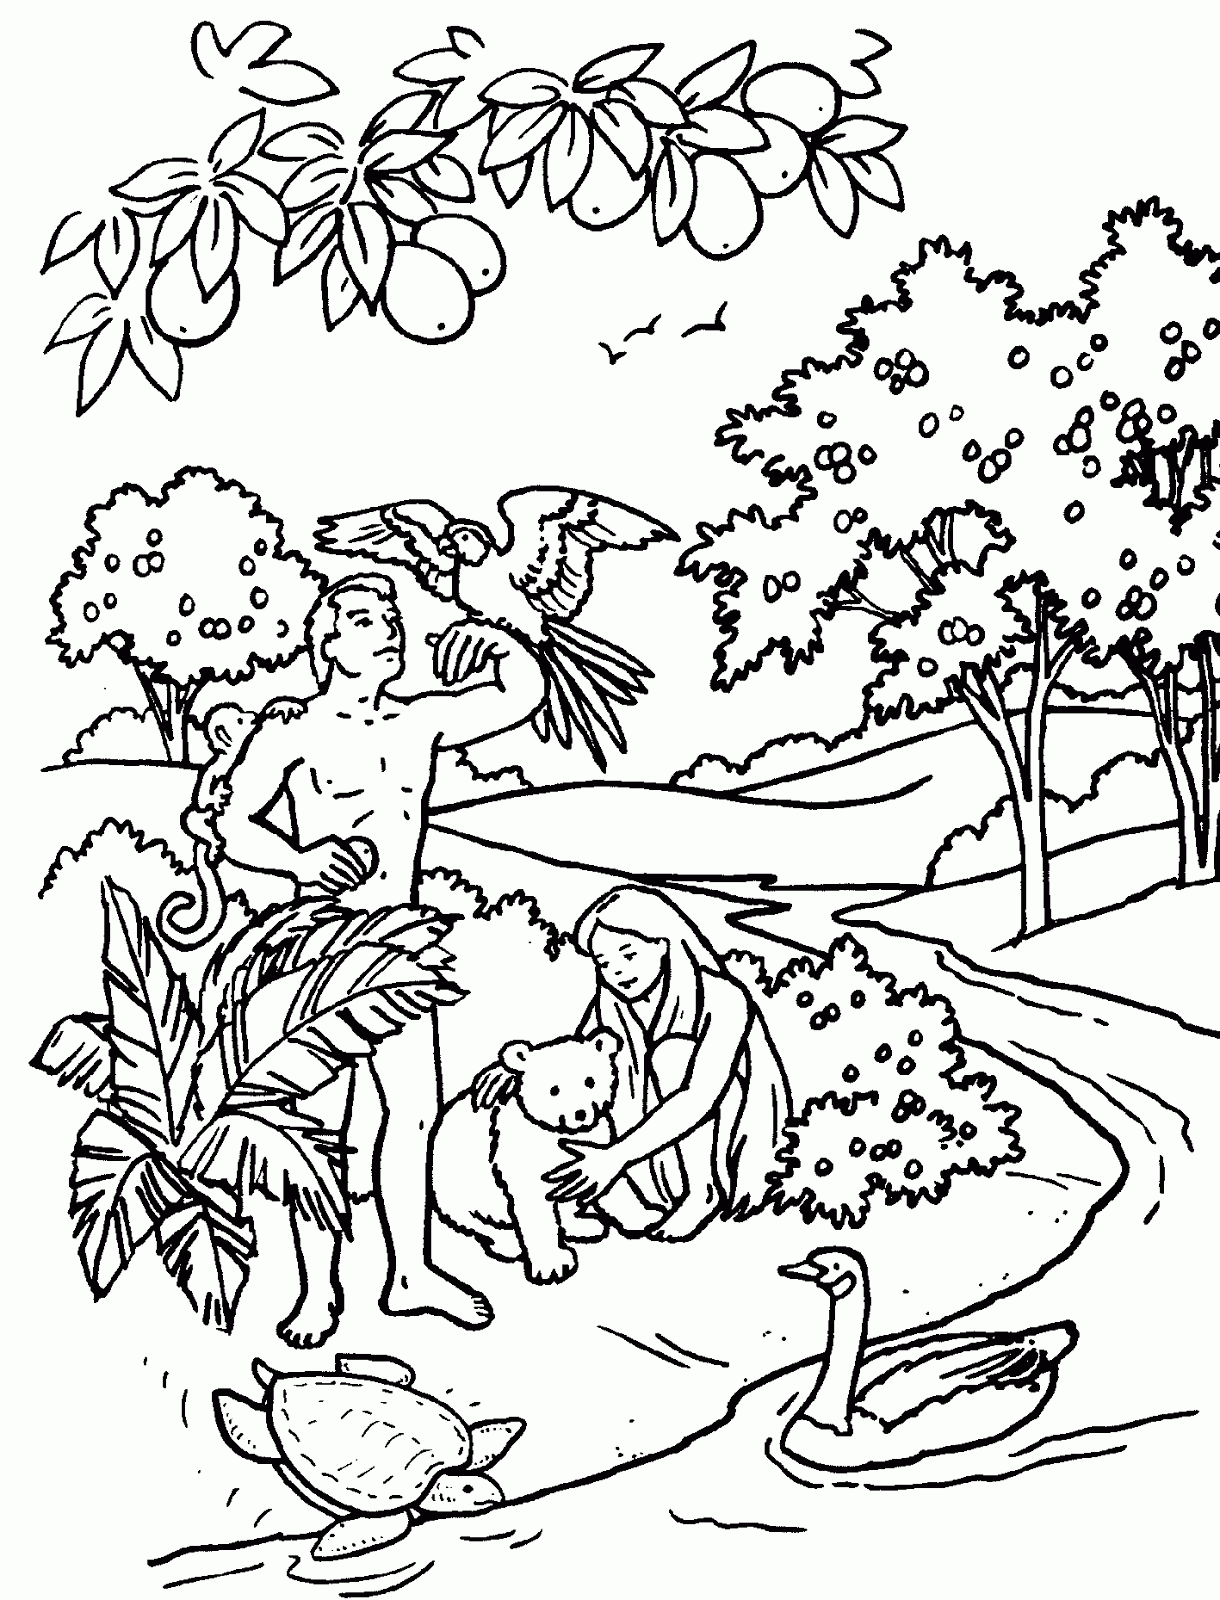 Dibujos Cristianos Para Colorear: Adán y Eva en el huerto del Edén ...